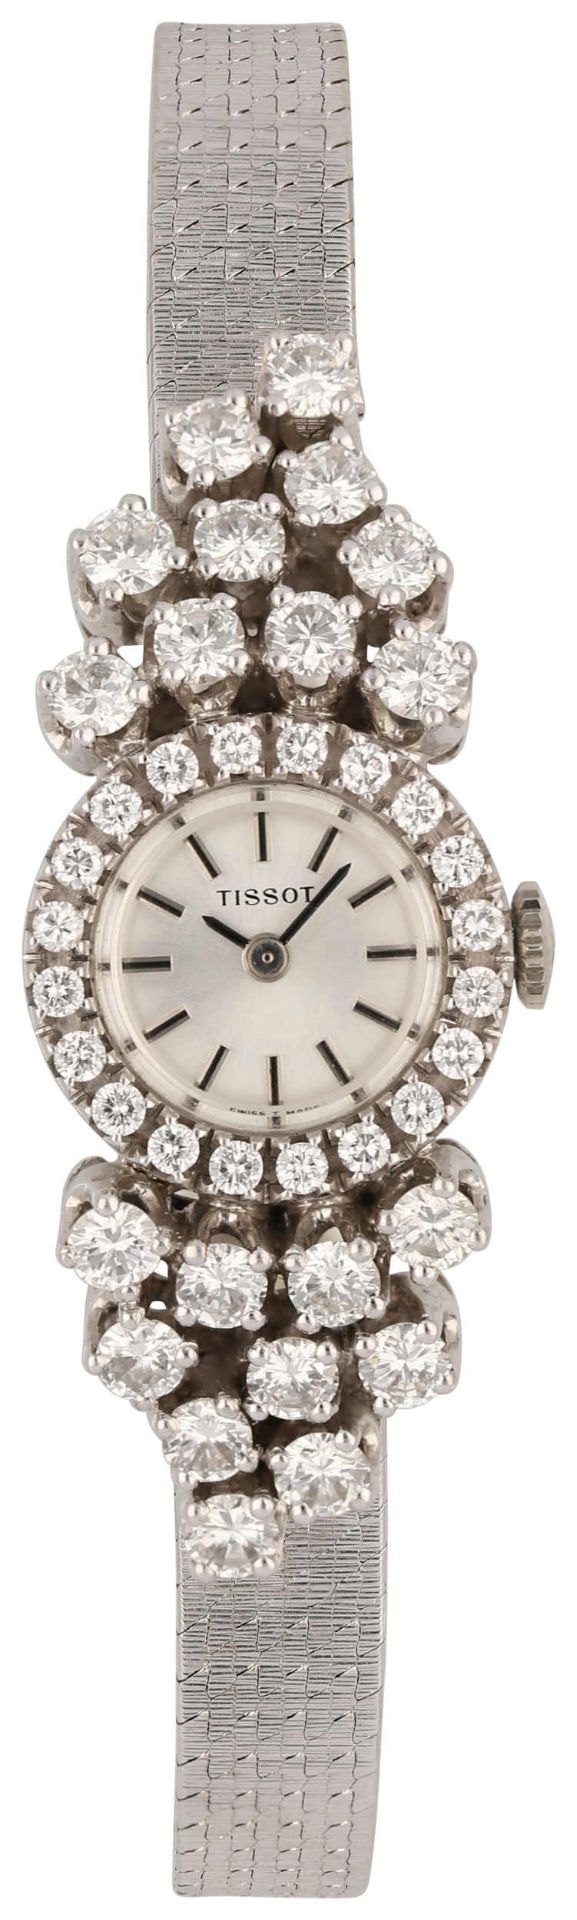 TISSOT Damenarmbanduhr Elegante Damenuhr in Weissgold 18K. Von der Lünette über das Uhrband